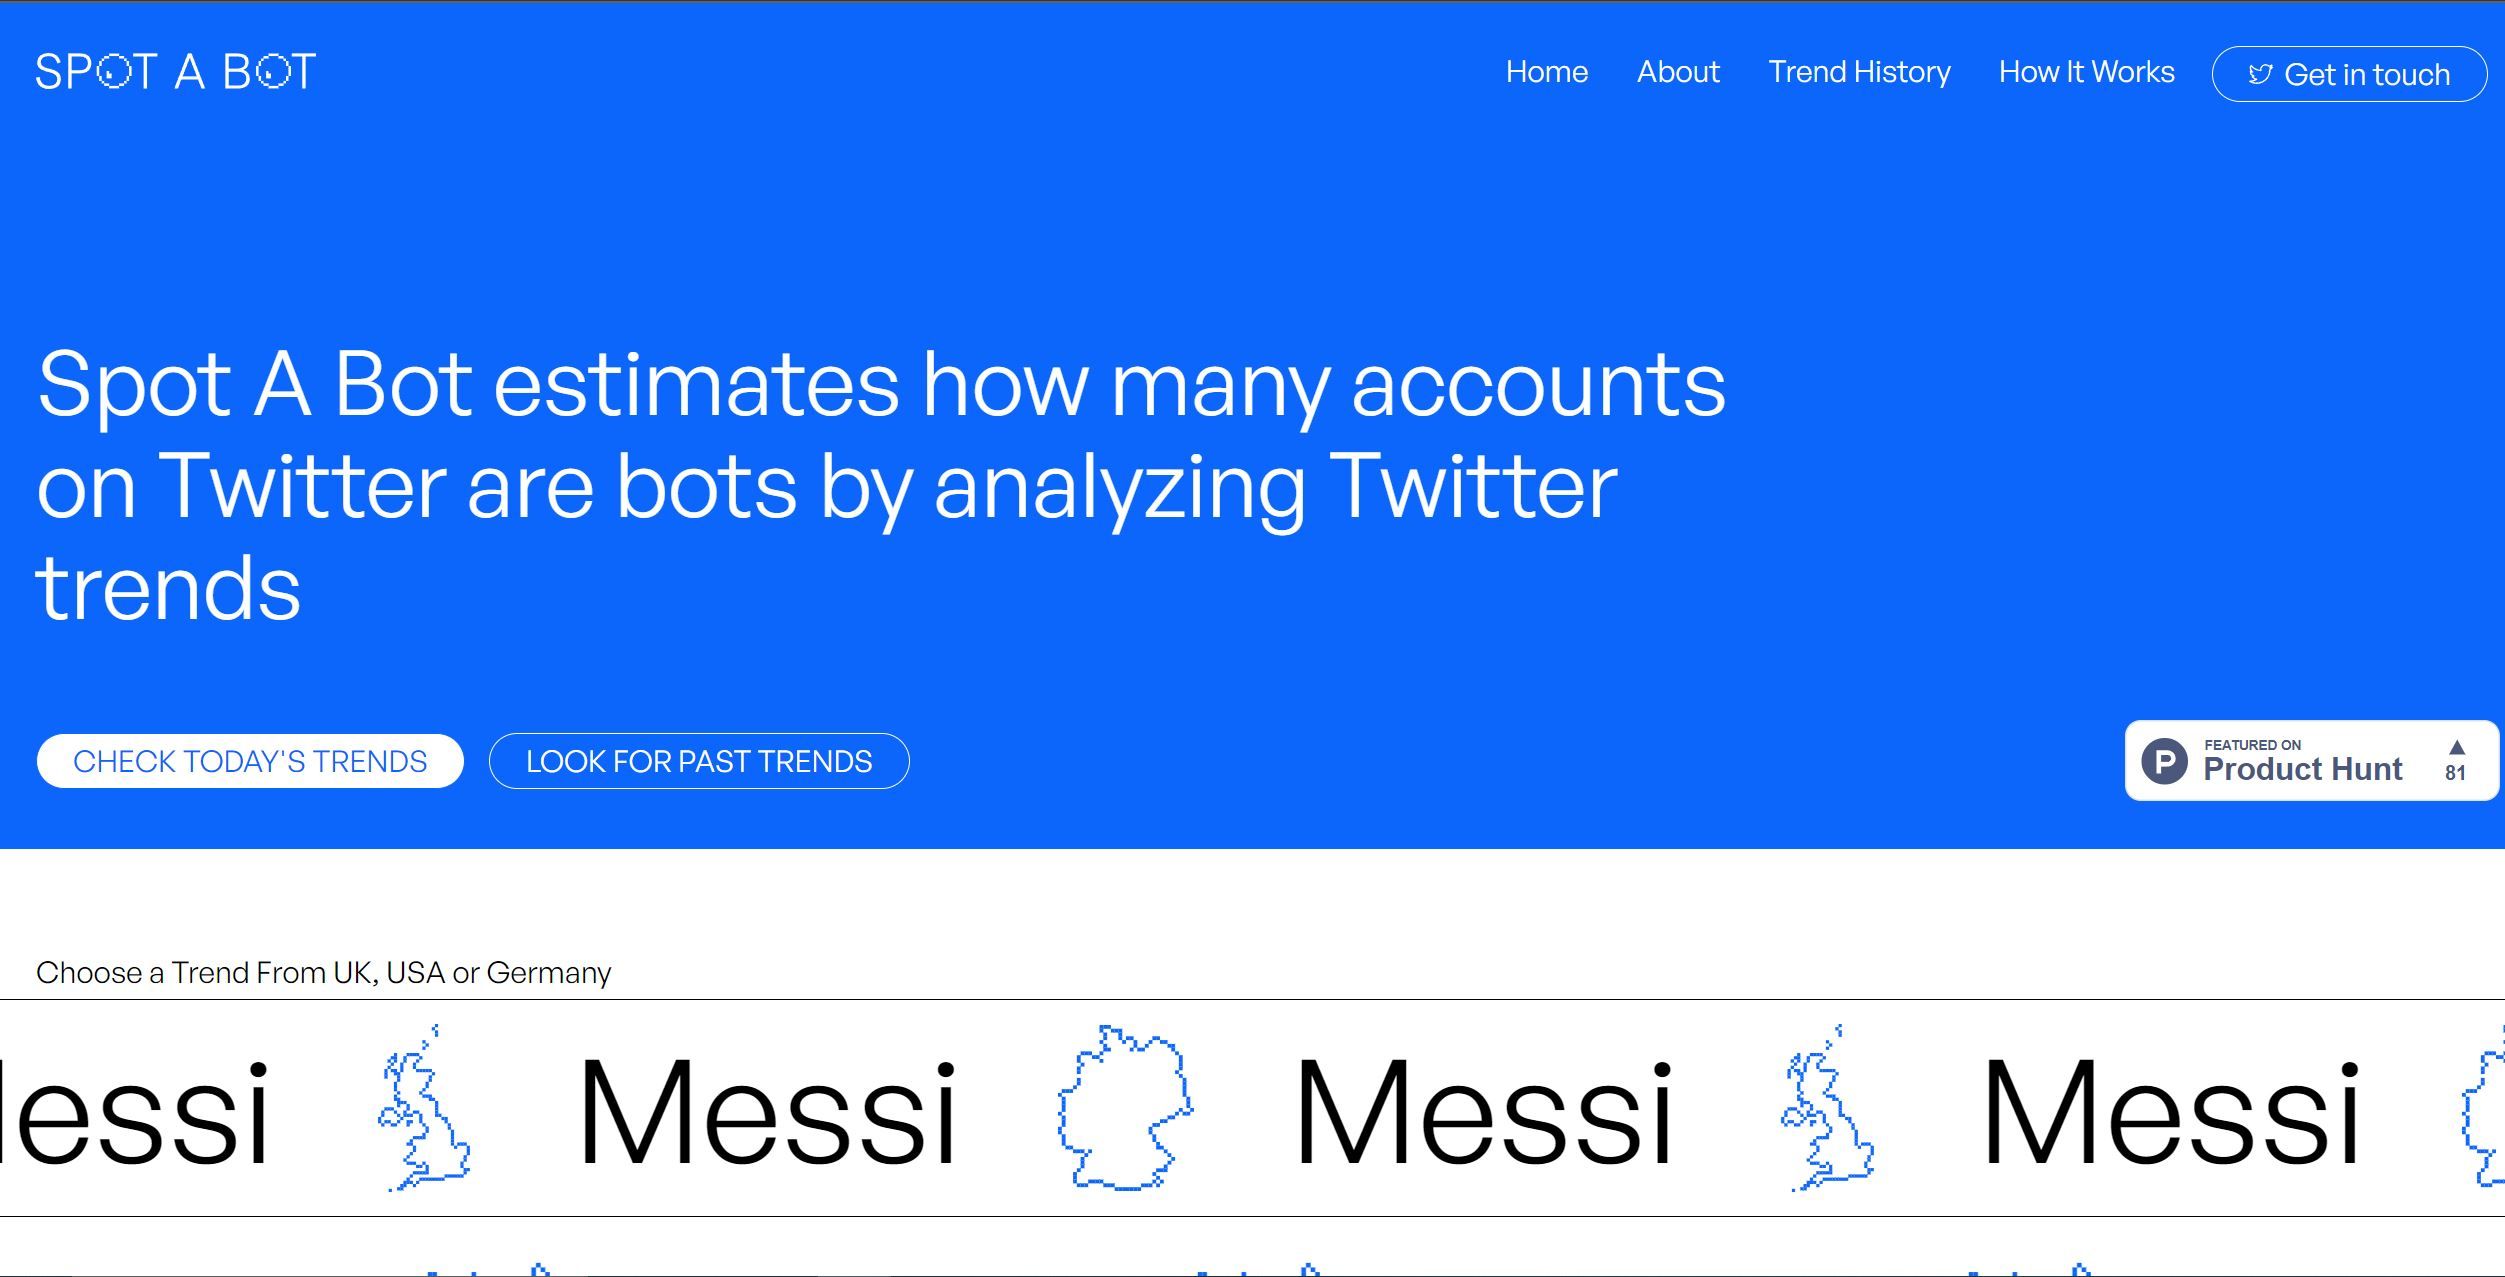 Spot a botSpot a Bot is an AI tool analyzing